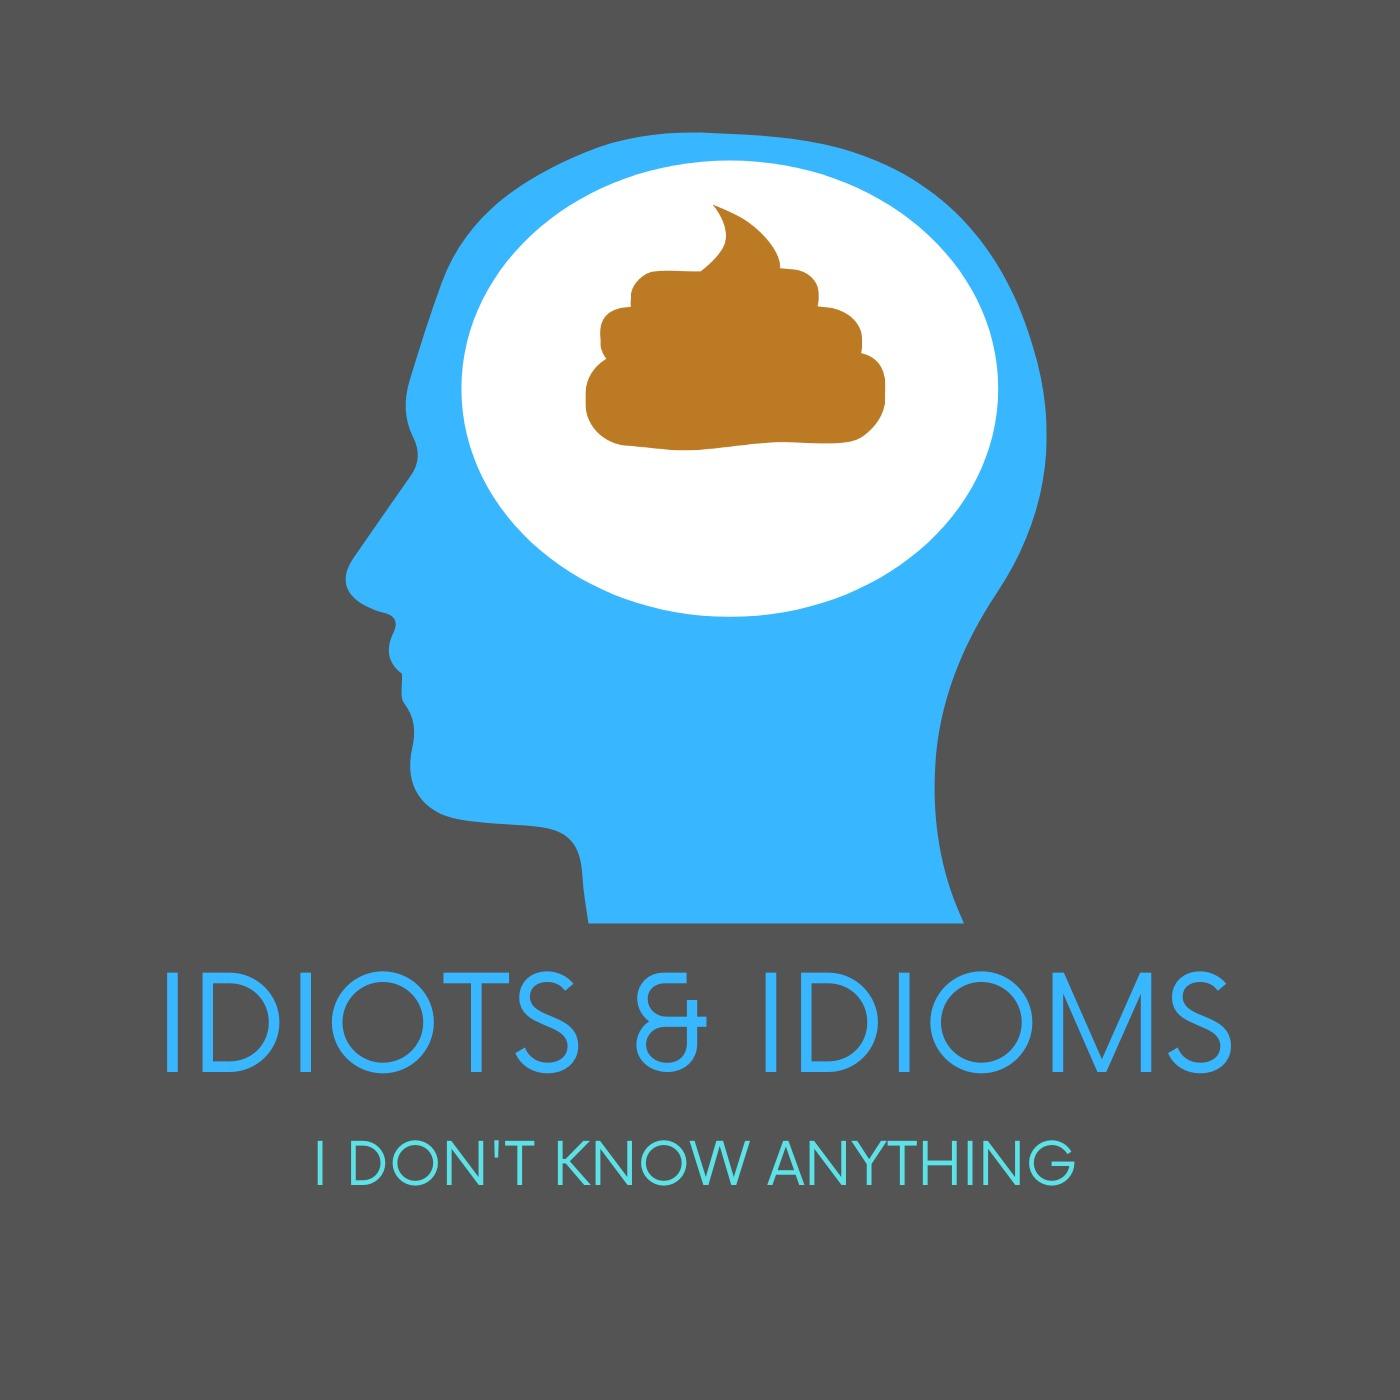 Idiots & Idioms